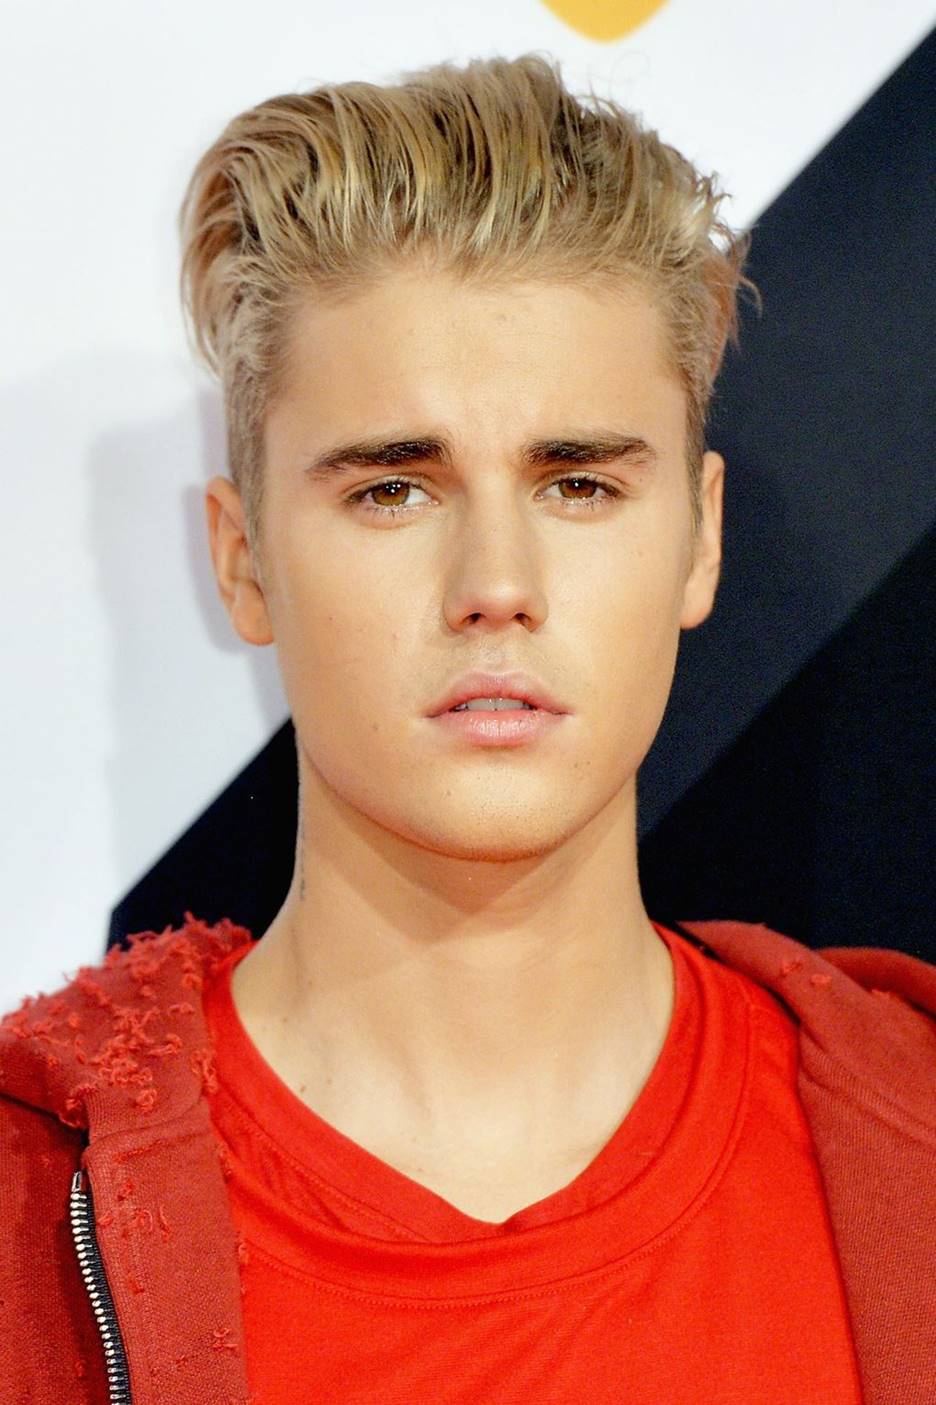 Justin Bieber’s Hair